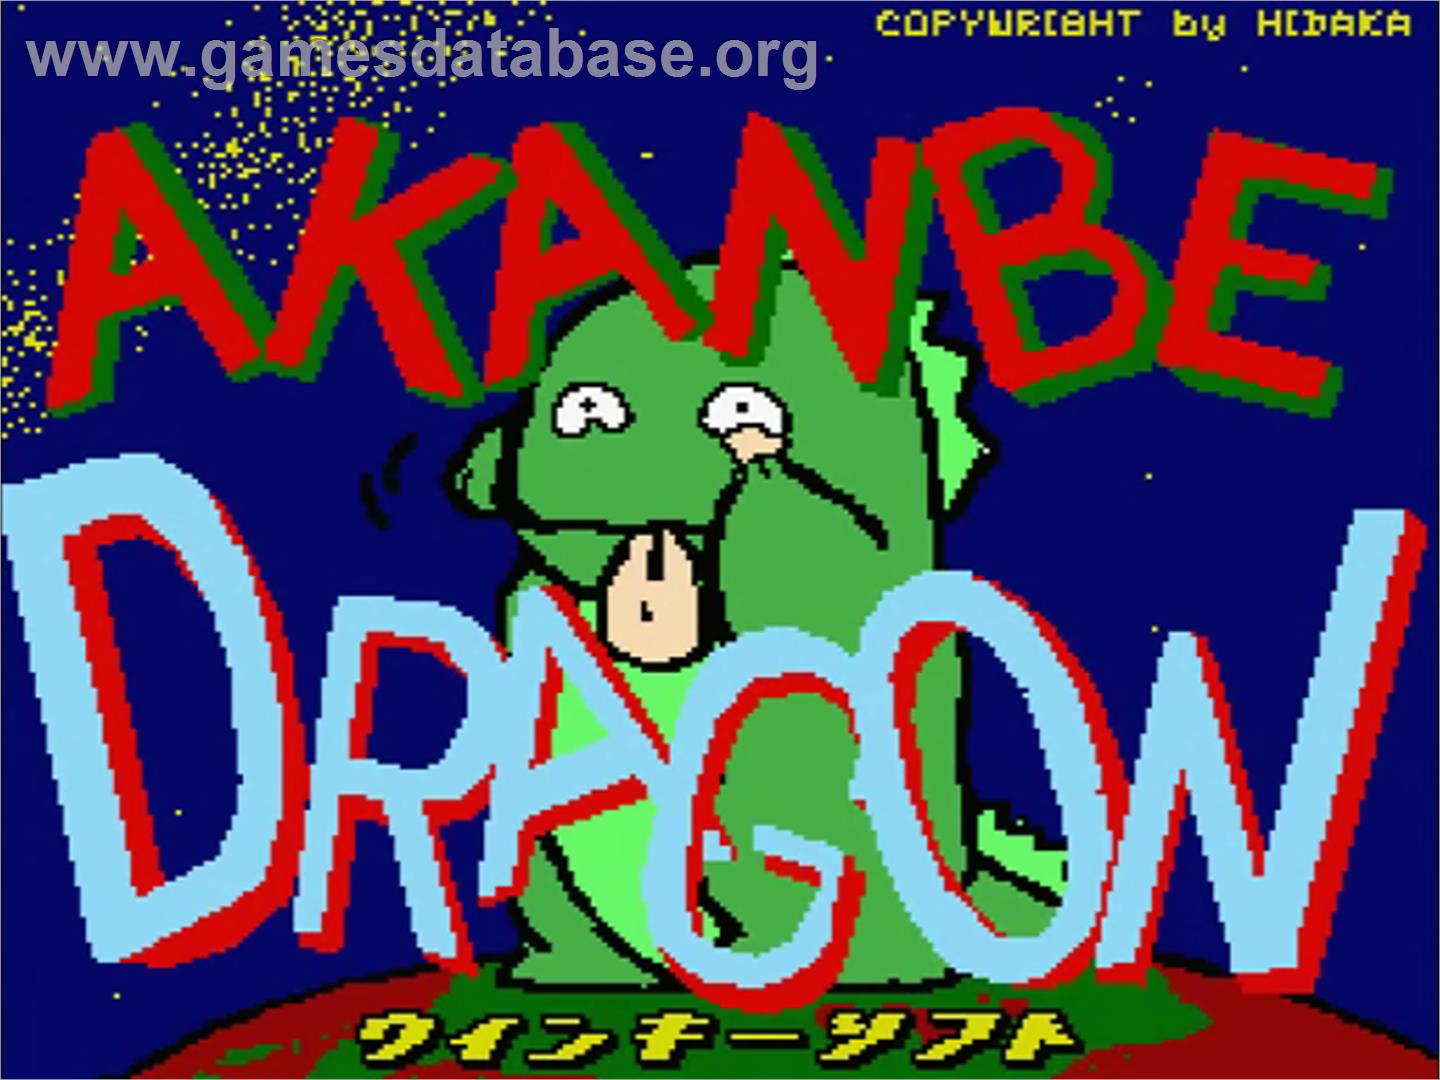 Akanbe Dragon - MSX 2 - Artwork - Title Screen